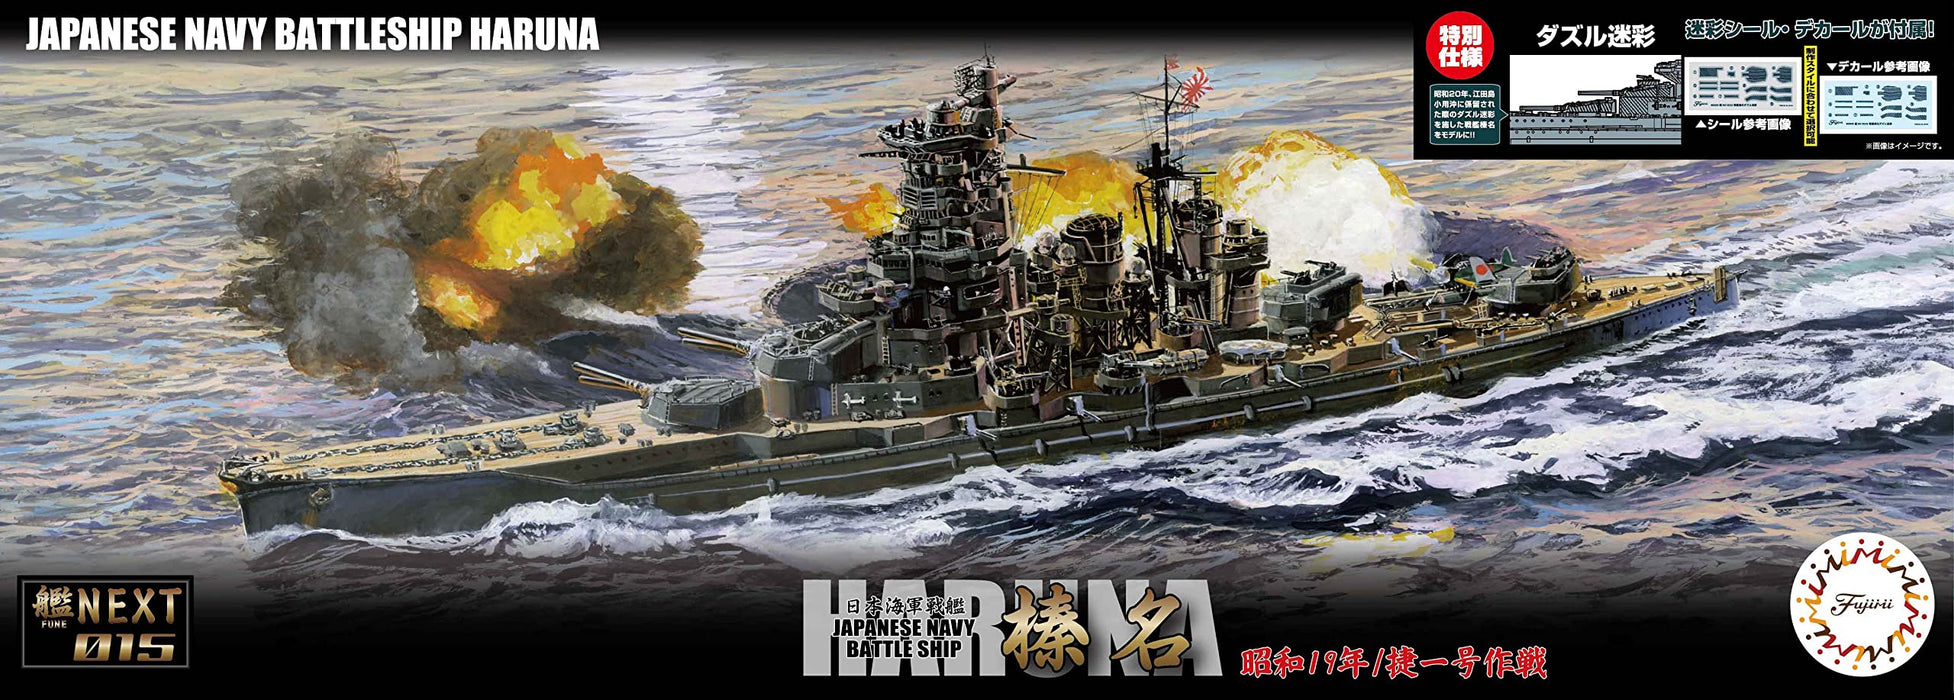 Fujimi Model 1/700 Japanese Navy Battleship Haruna 1944 Ship Nx-15 Ex-2 Dazzle Camo